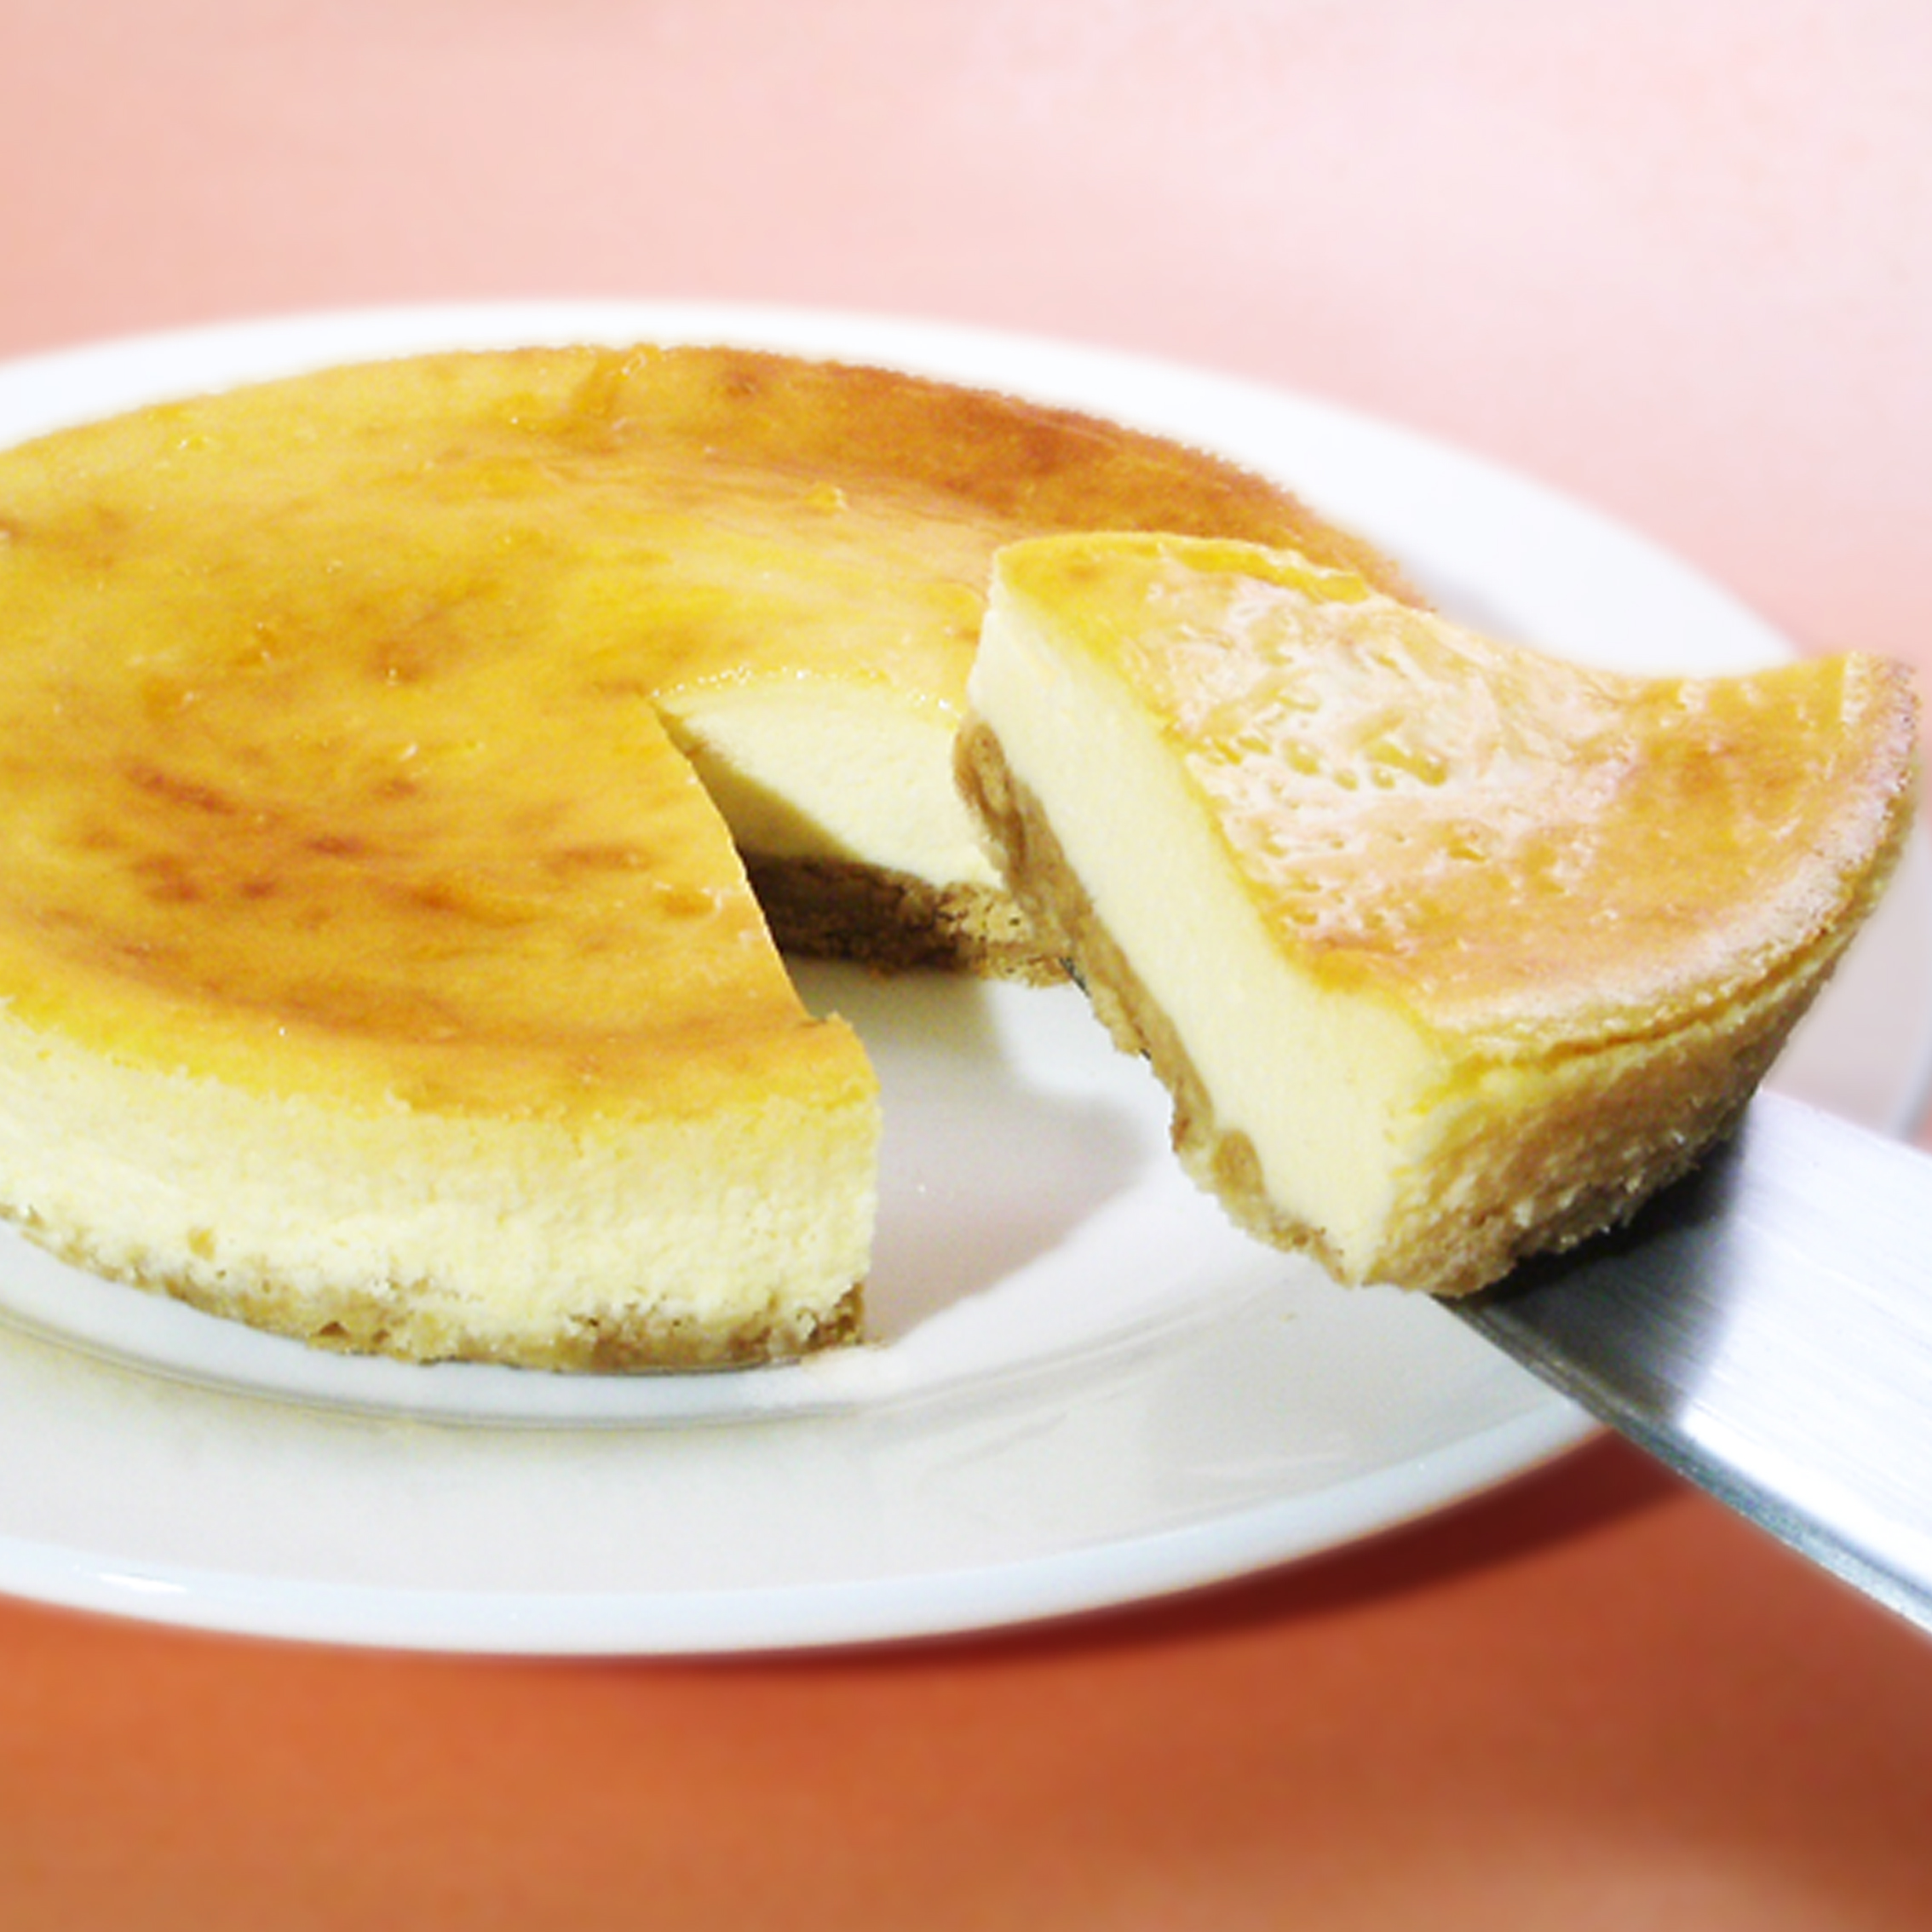 【エニシダ】ベイクドチーズケーキ